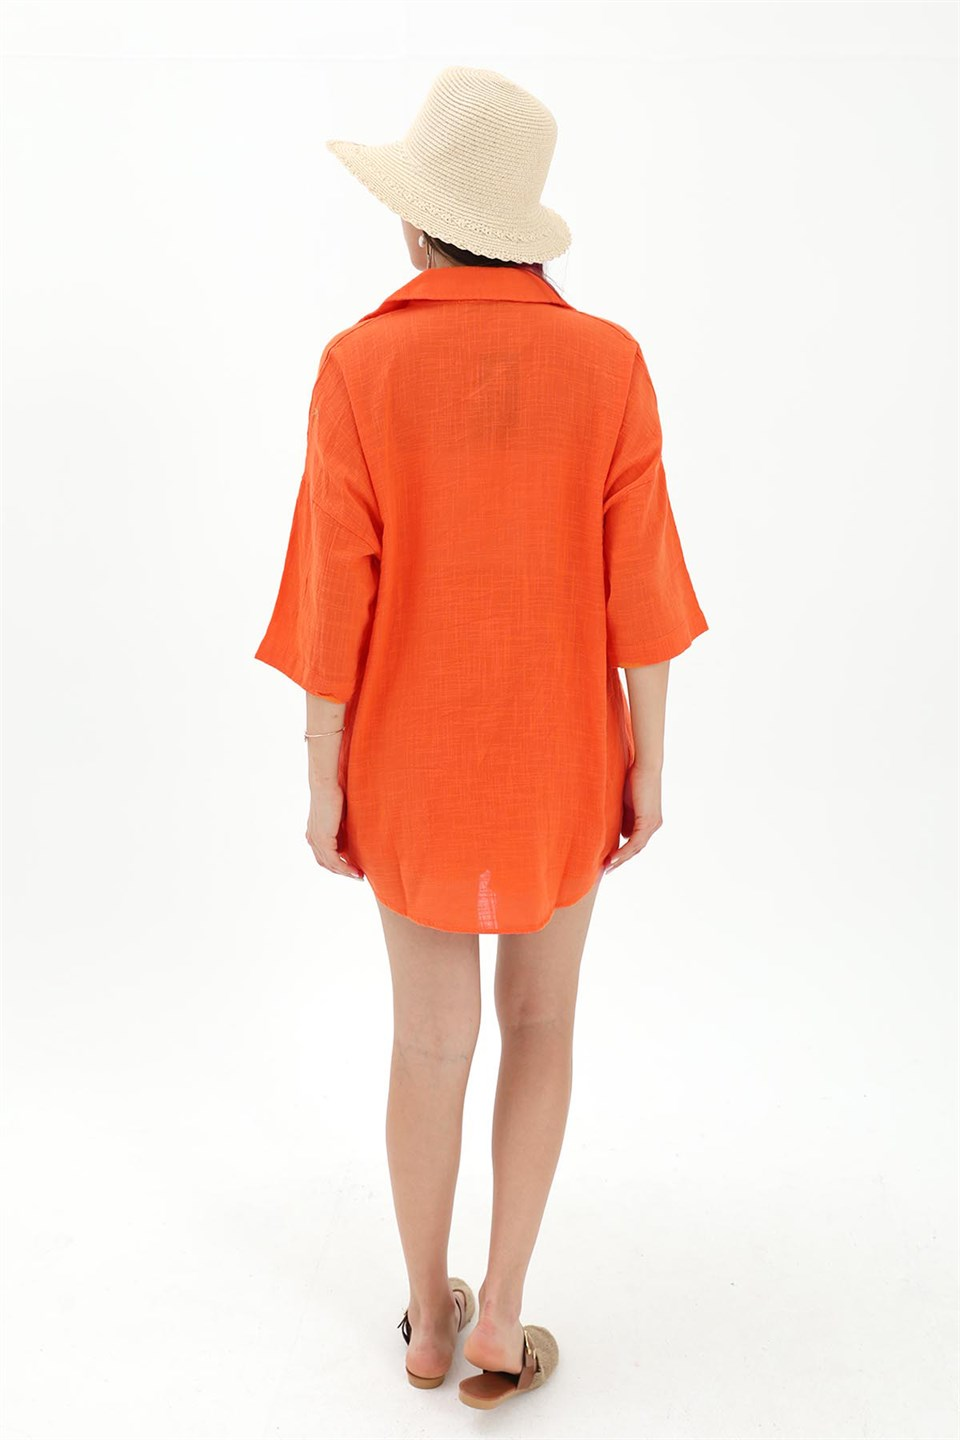 Women's Cotton Linen Shorts Shirt Women's Double Suit -Orange - STREET MODE ™